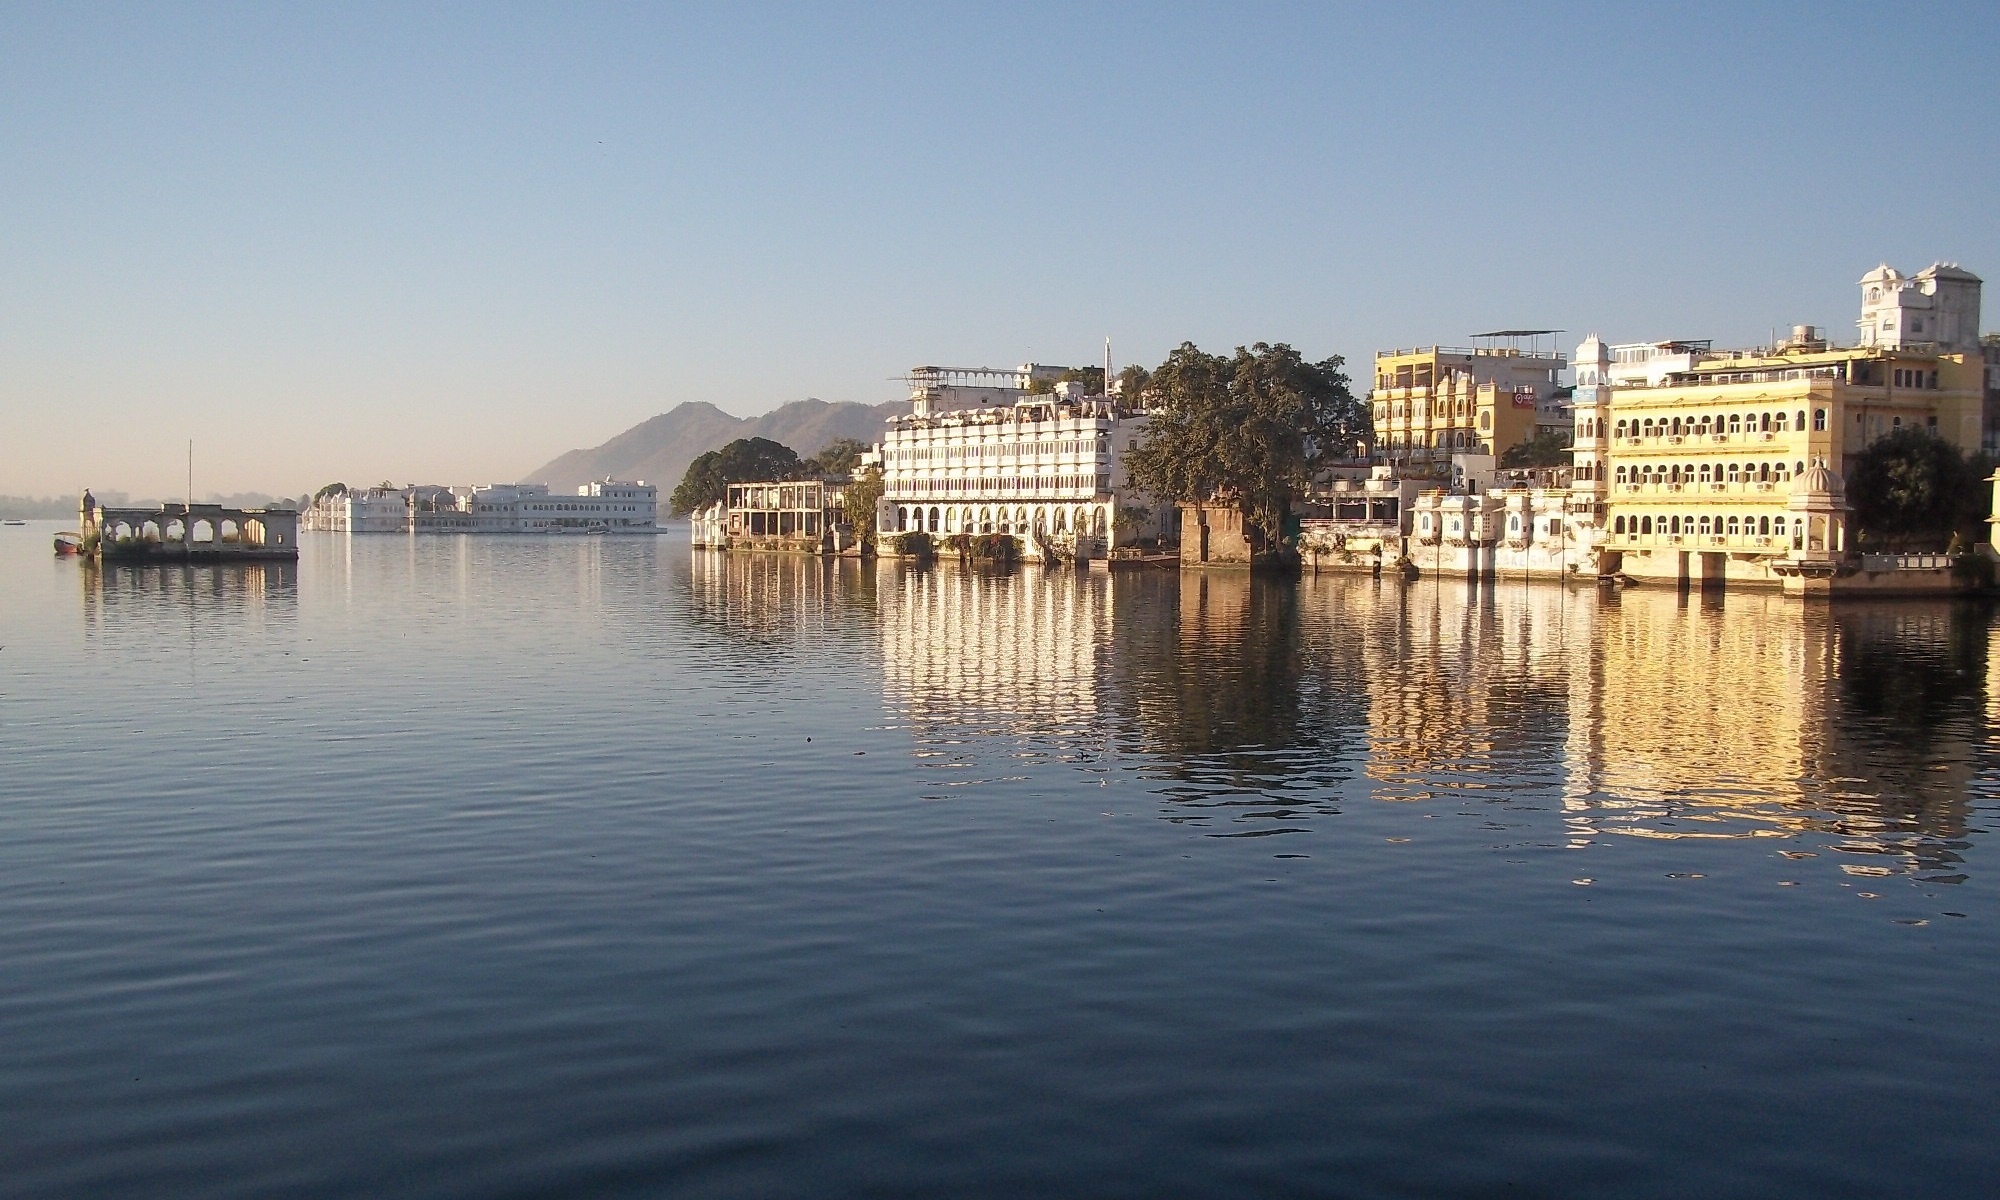 Lake Pichola, Udaipur luxury tours, Exquisite vacations, Memorable experiences, 2000x1200 HD Desktop